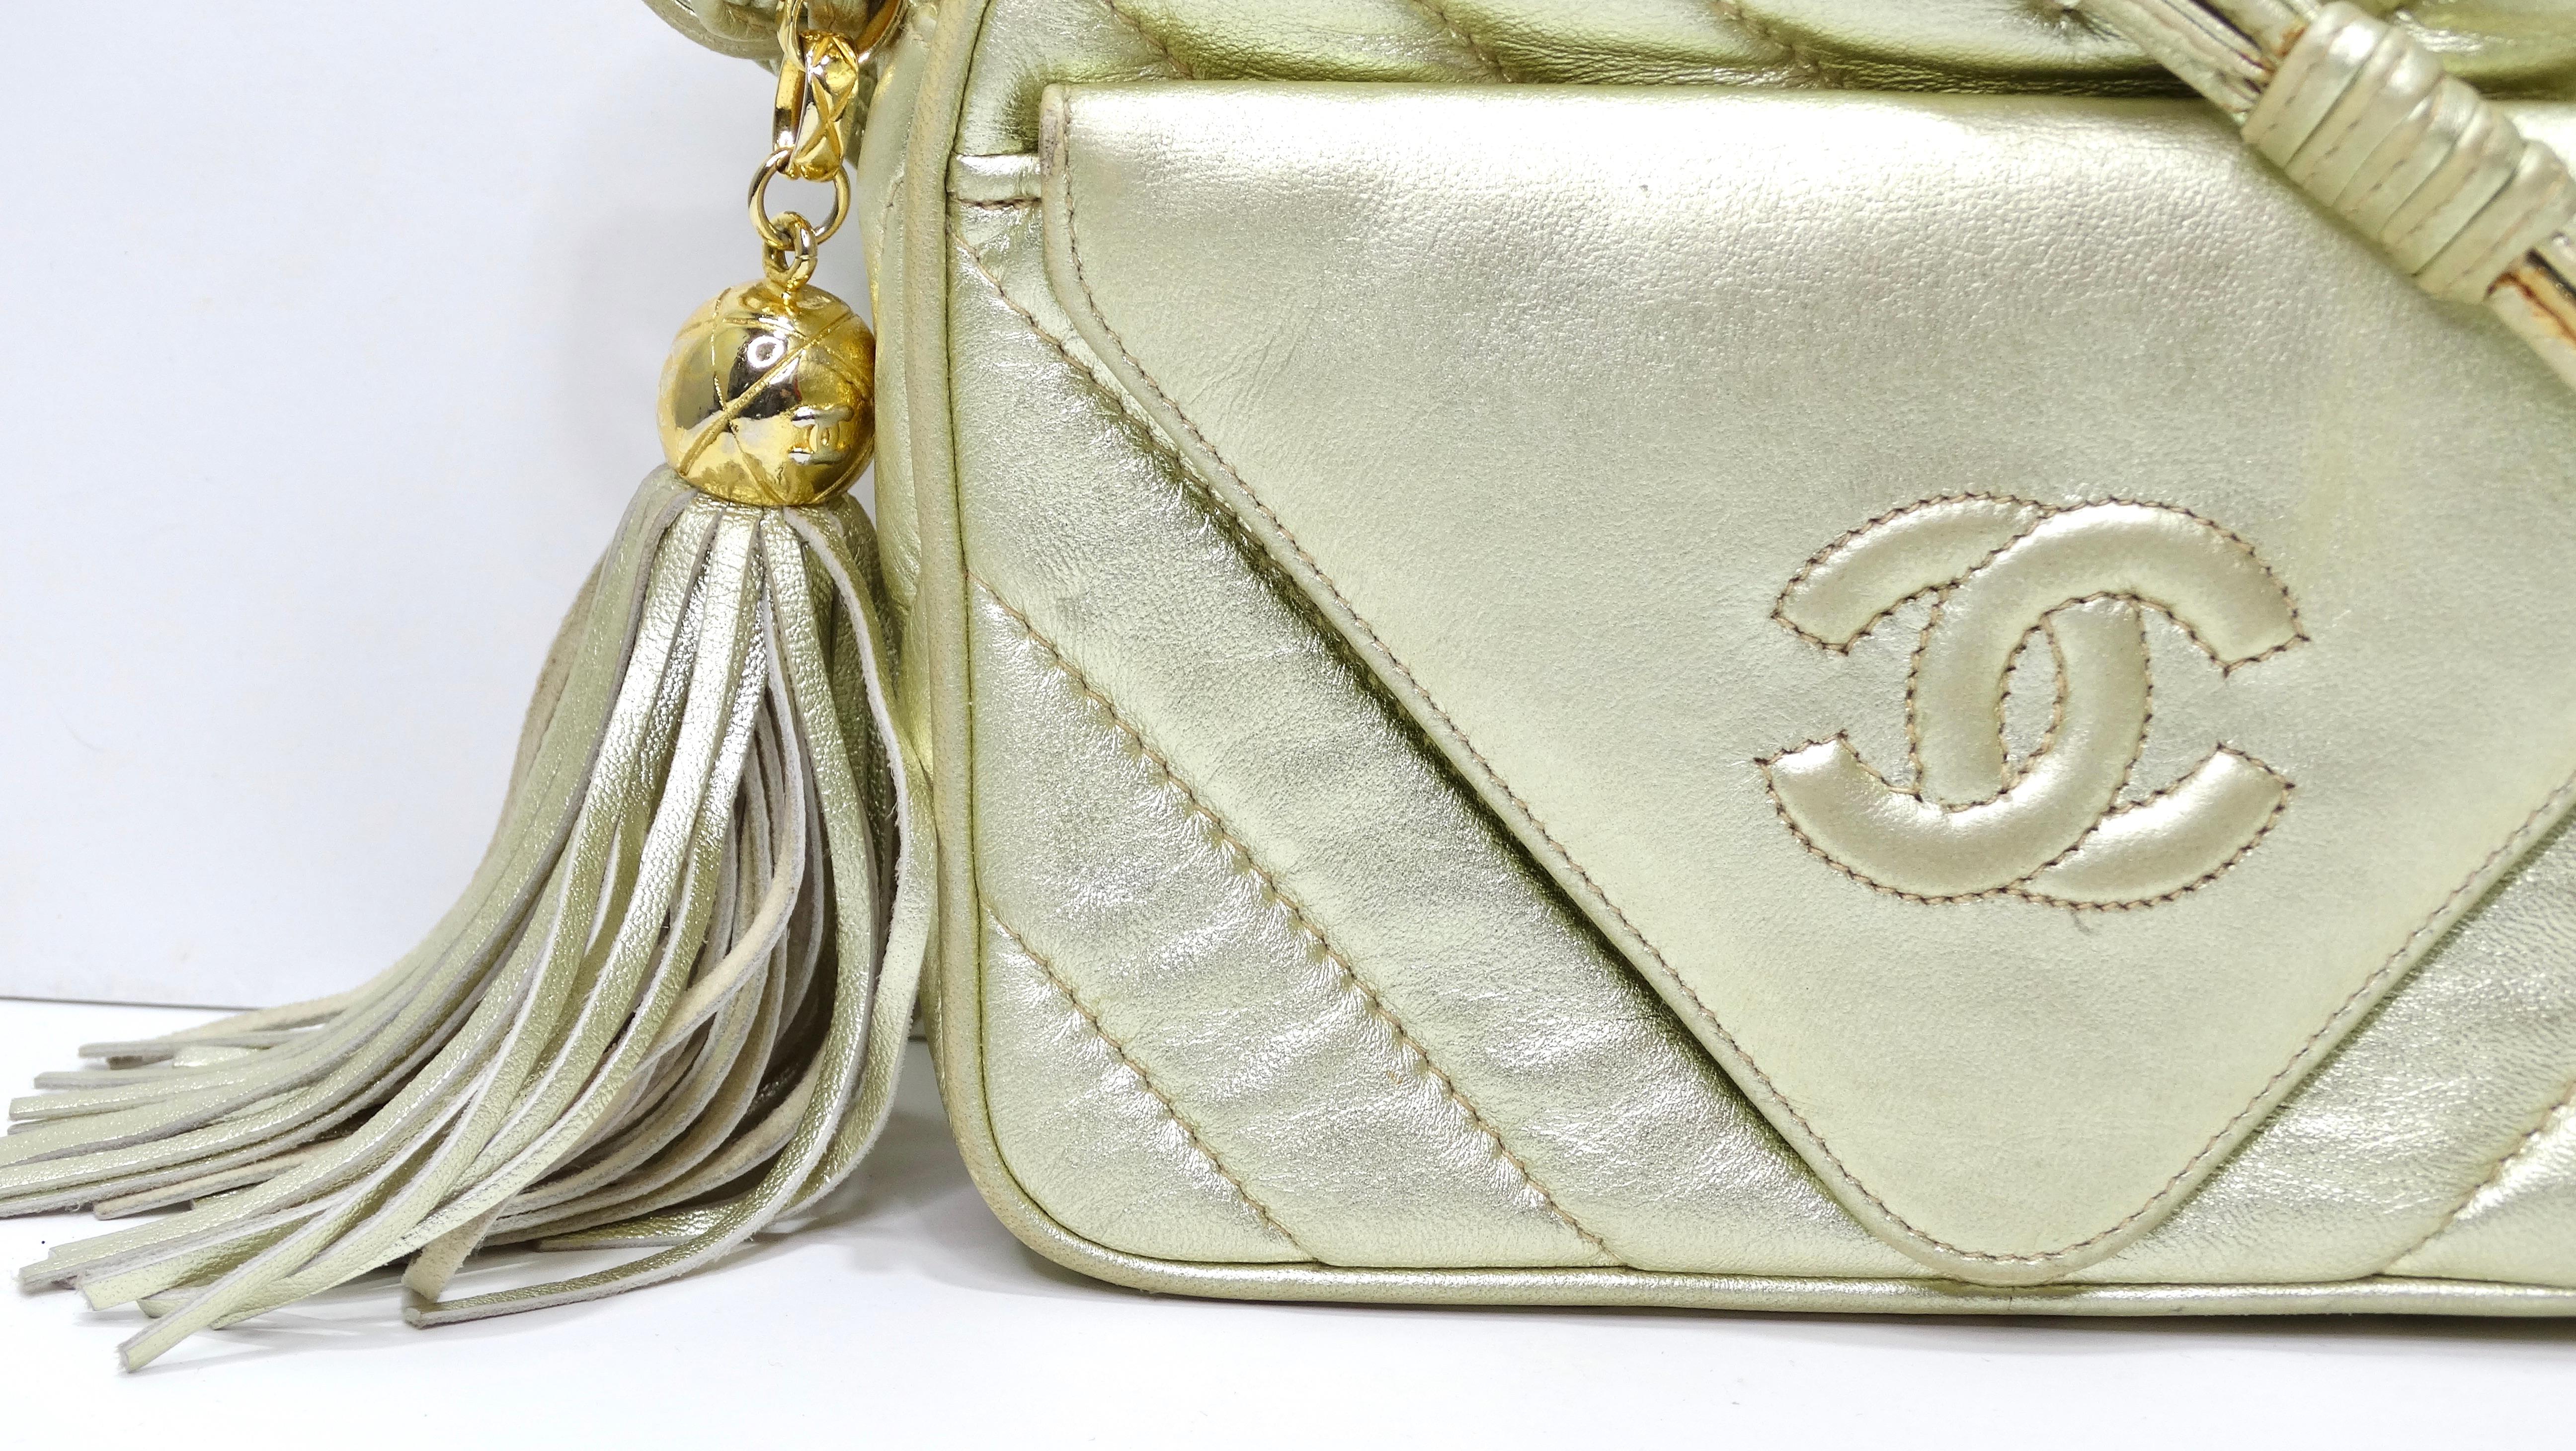 Dies ist die schönste und luxuriöseste Handtasche aus dem Hause Chanel! Verpassen Sie nicht die Chance, ein Stück Chanel-Geschichte mit diesem Schmuckstück aus den 1980er Jahren zu besitzen. Alles ist besser Vintage! Der Zustand dieser Tasche